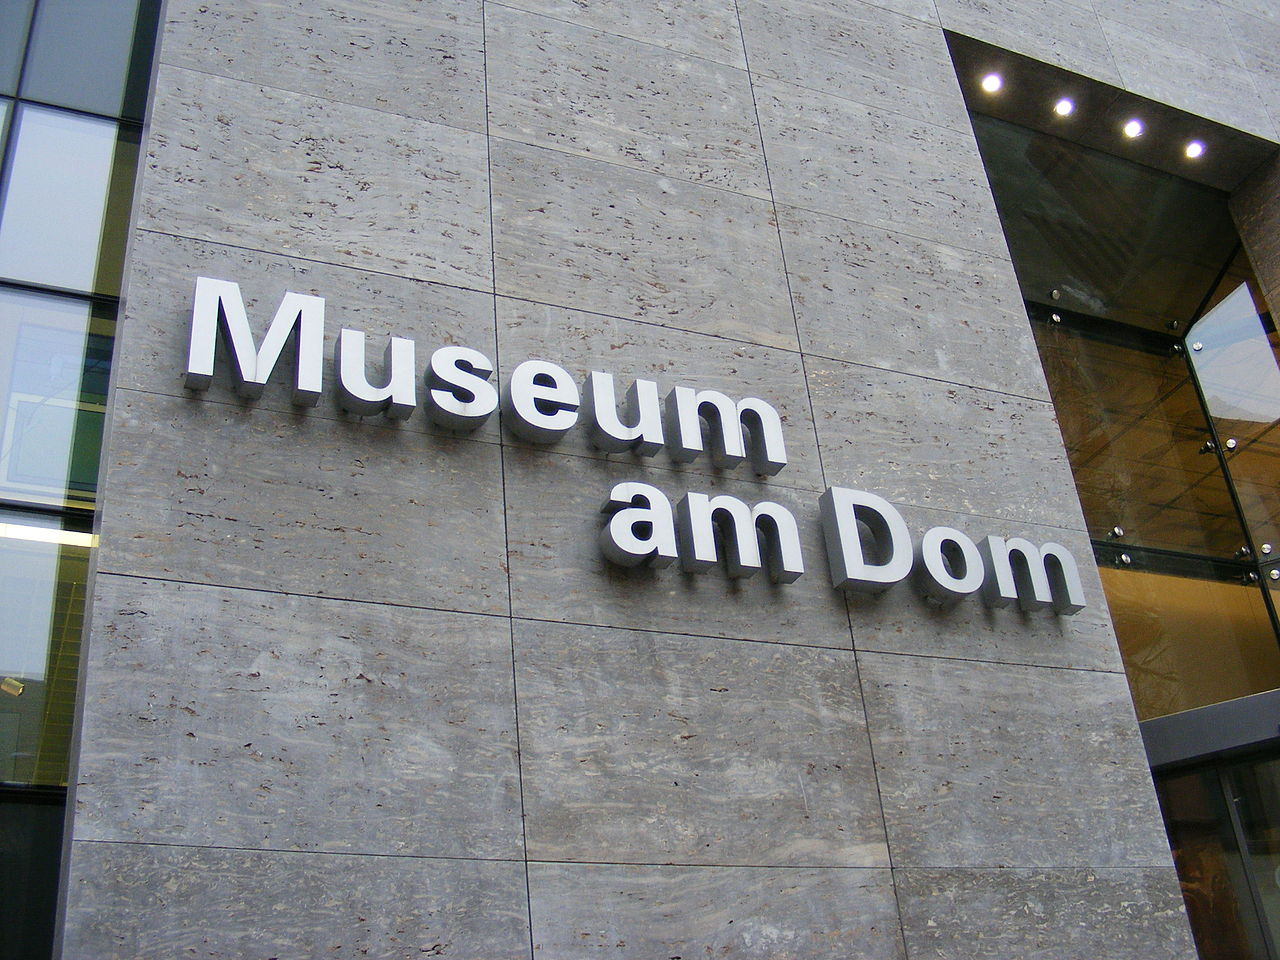 Bild Museum am Dom Würzburg